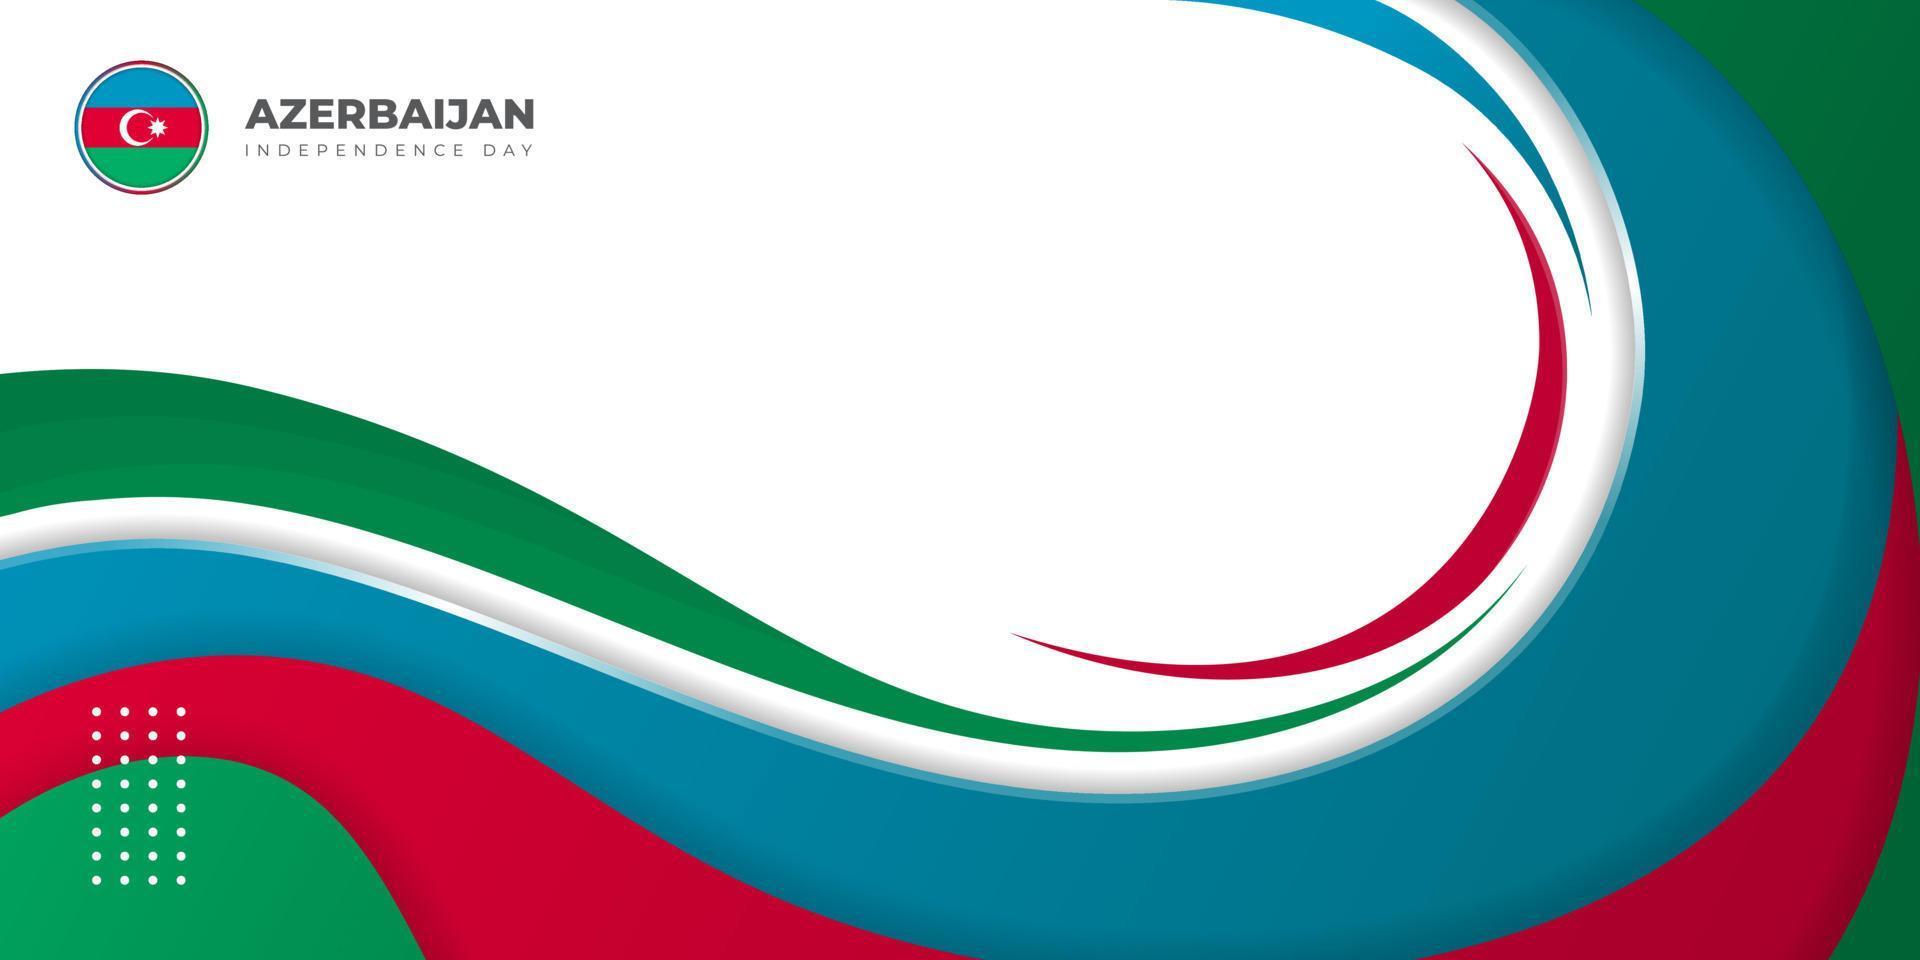 diseño abstracto azul, rojo y verde con fondo blanco. día de la independencia de azerbaiyán. vector